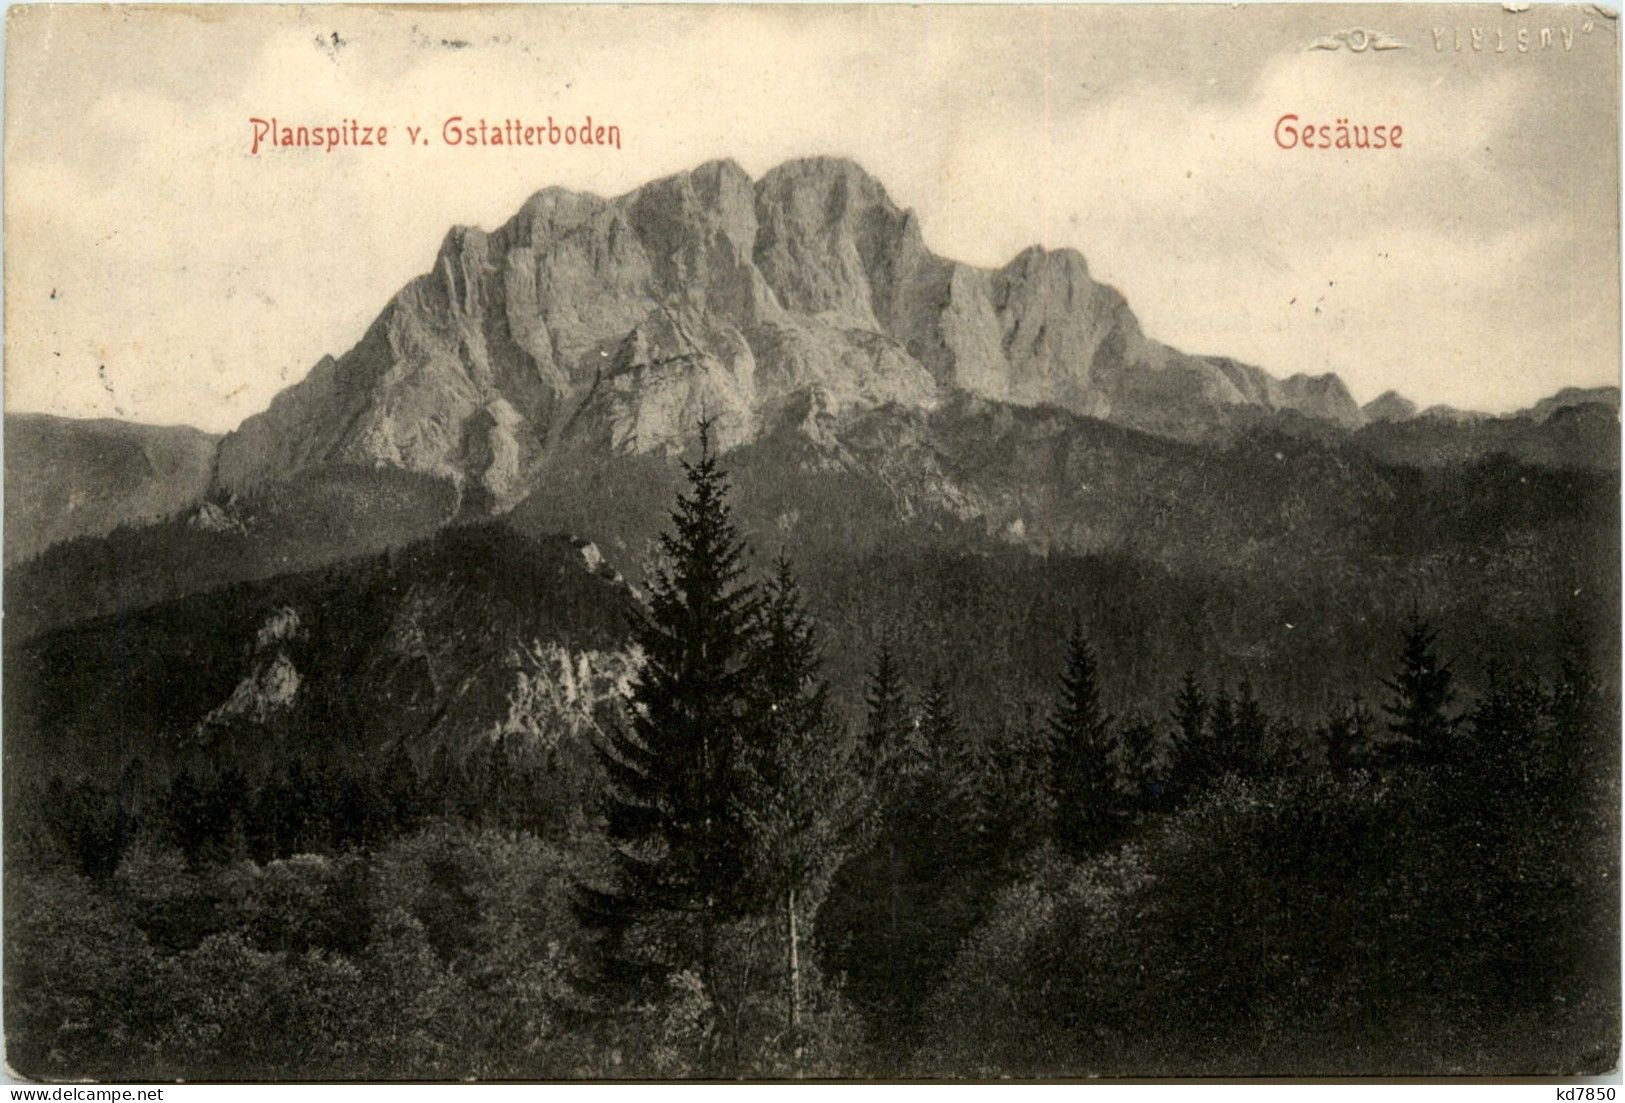 Gesäuse/Steiermark - Gesäuse, Planspitze V. Gstatterboden - Gesäuse